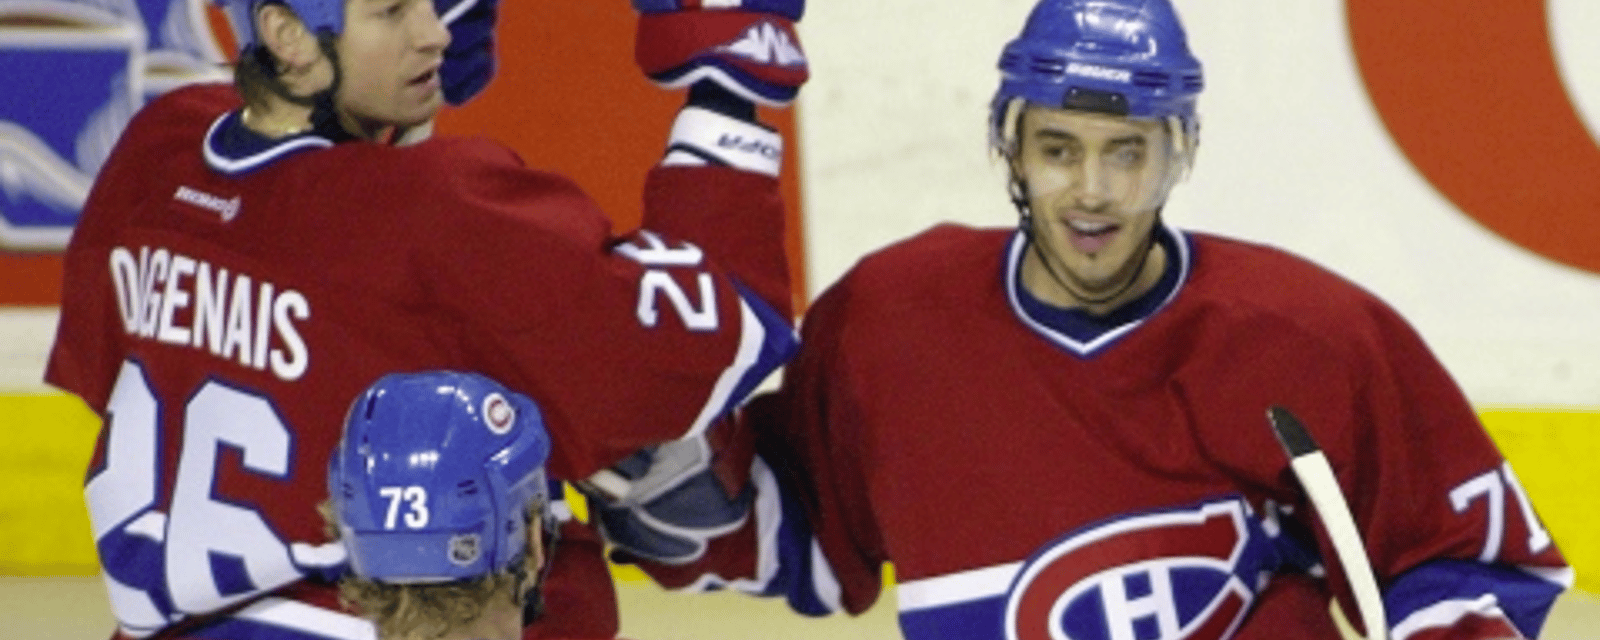 Un ancien joueur du Canadien de Montréal fait face à de graves accusations